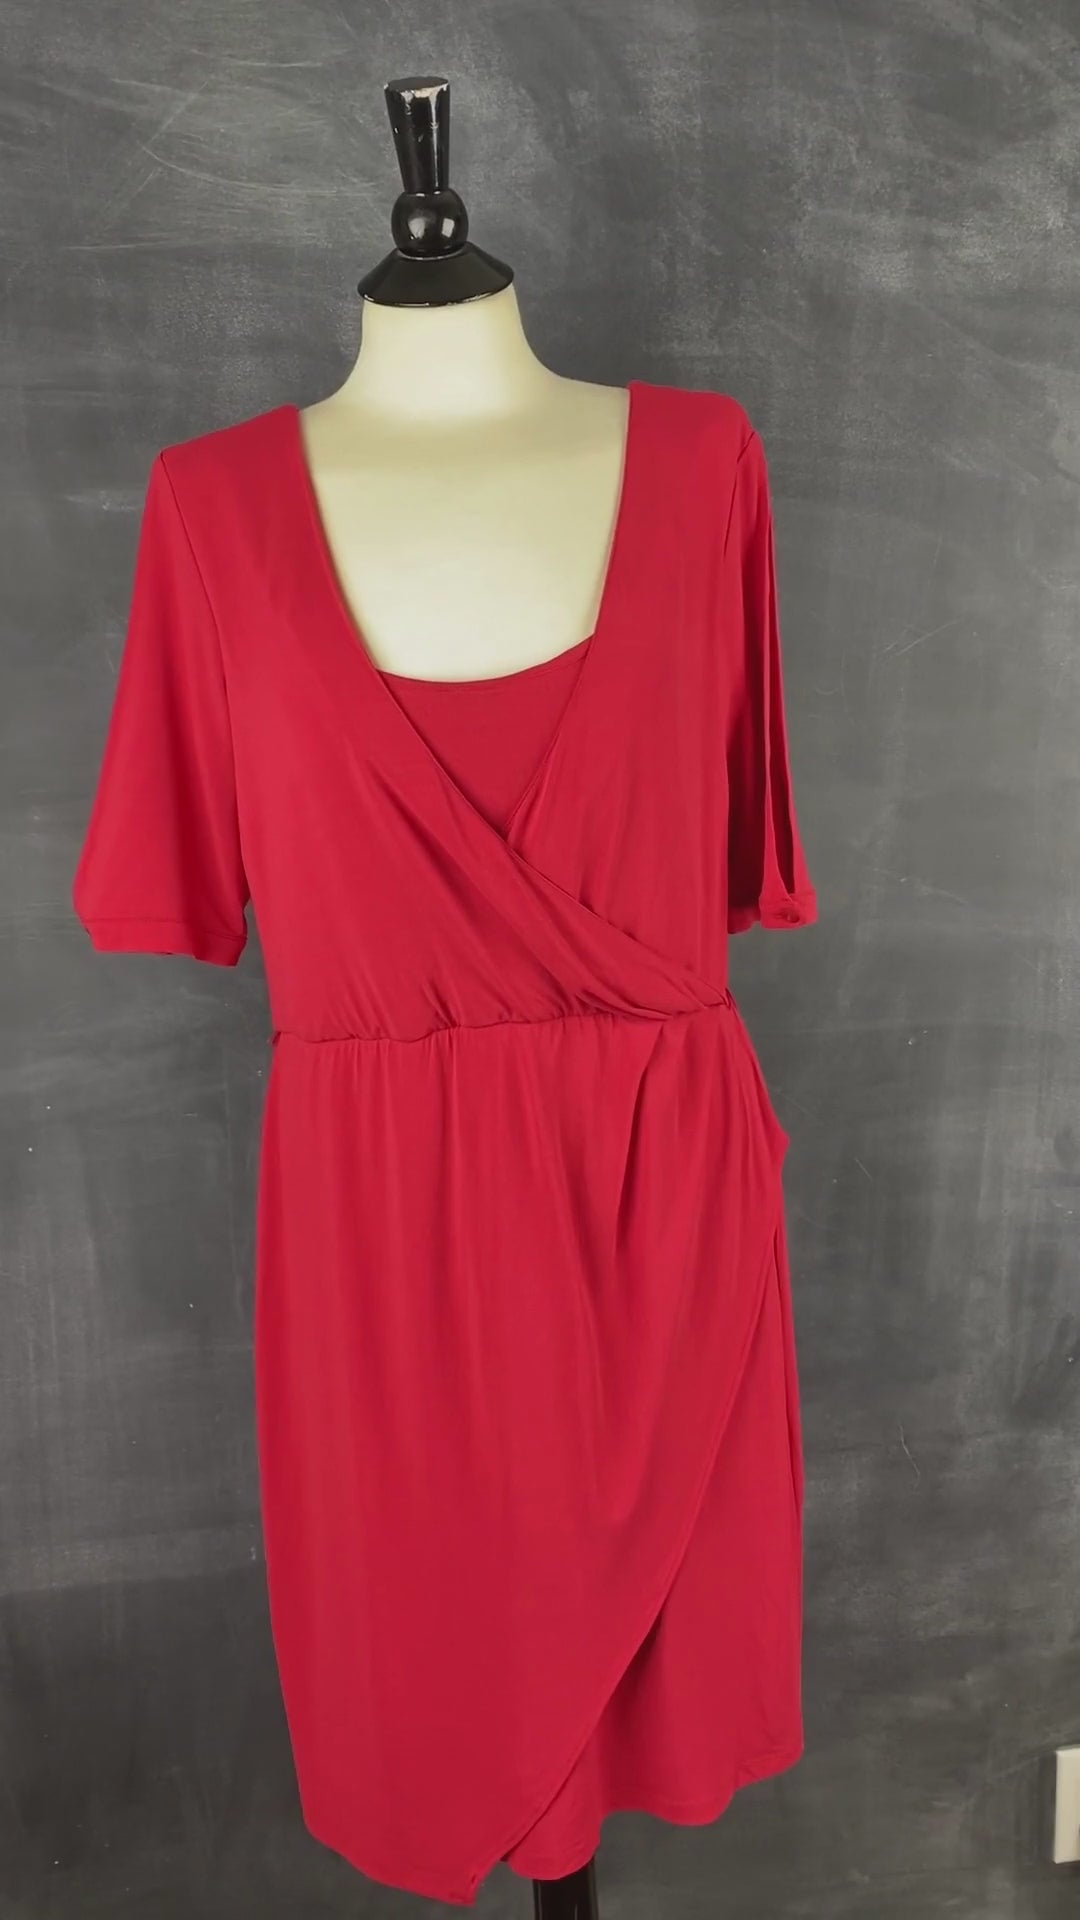 Robe rouge extensible de style portefeuille de la marque québécoise Iris Setlakwe. Magnifique coupe et superbe robe classique. Vue de la vidéo qui présente tous les détails de la magnifique robe.